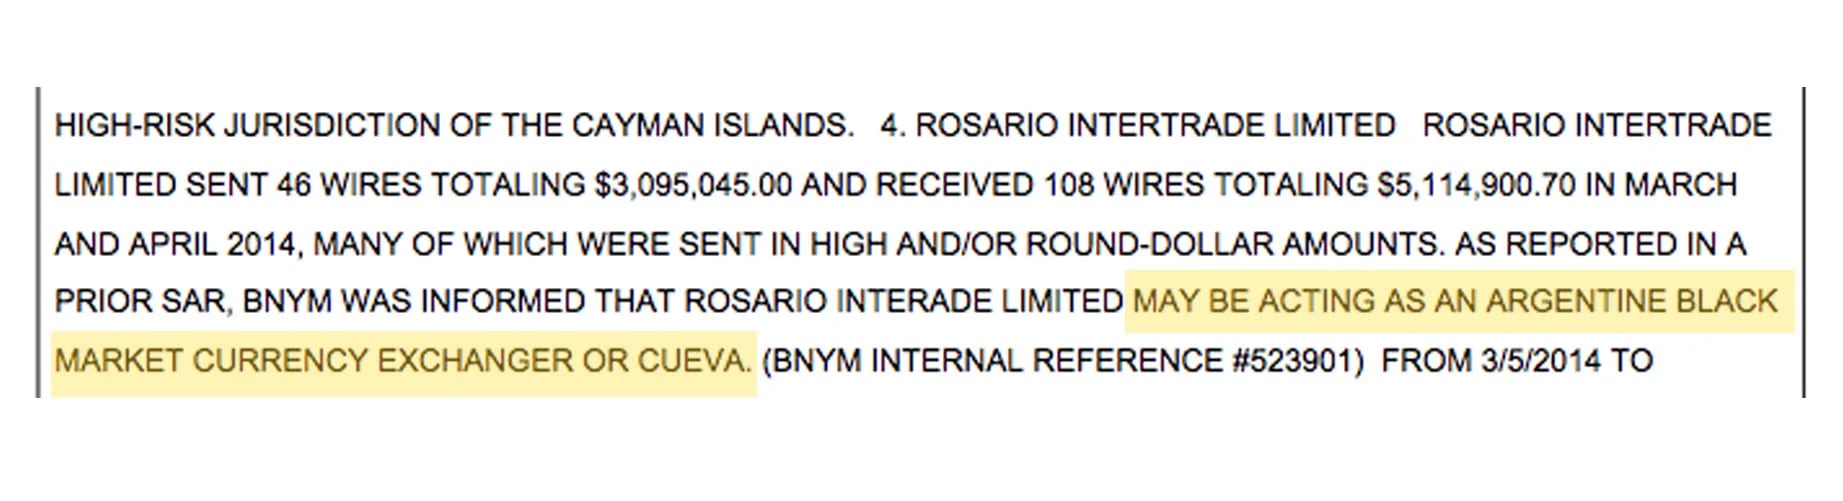 El SAR emitido por la FinCEN en julio de 2014 donde identifica a Rosario Intertrade como una "cueva" (sic).